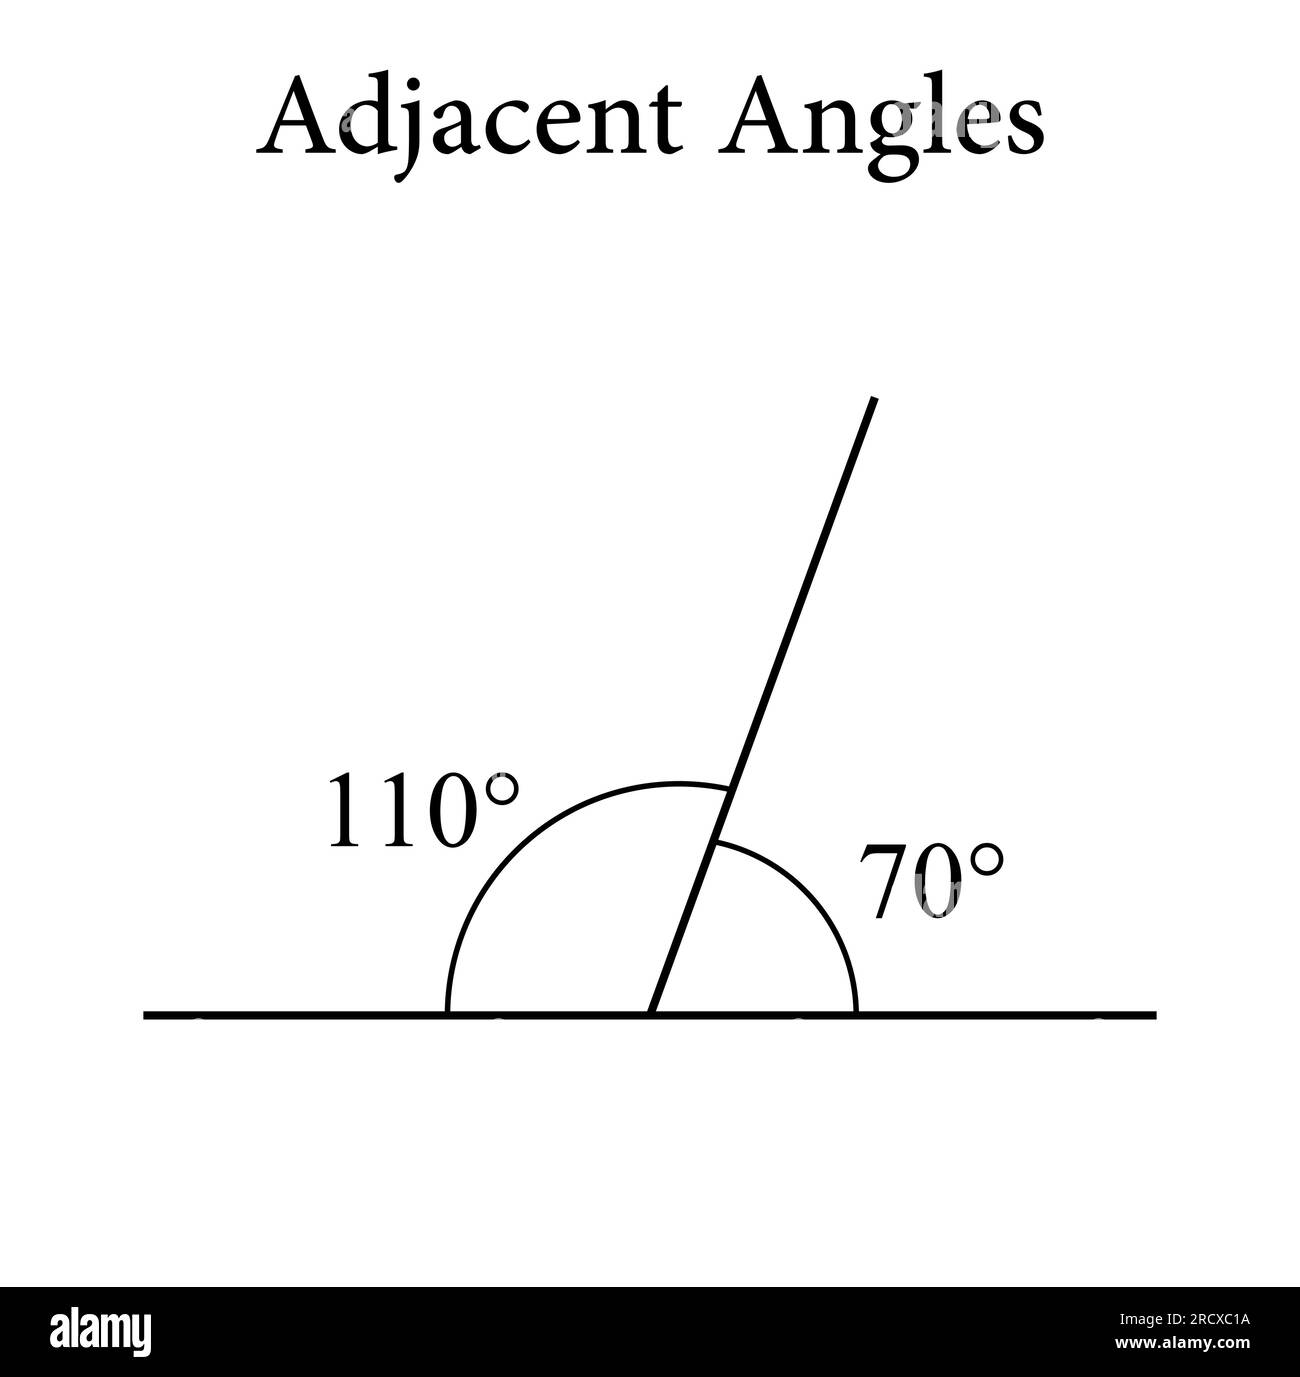 Angles mathematics Banque de photographies et d'images à haute résolution -  Alamy